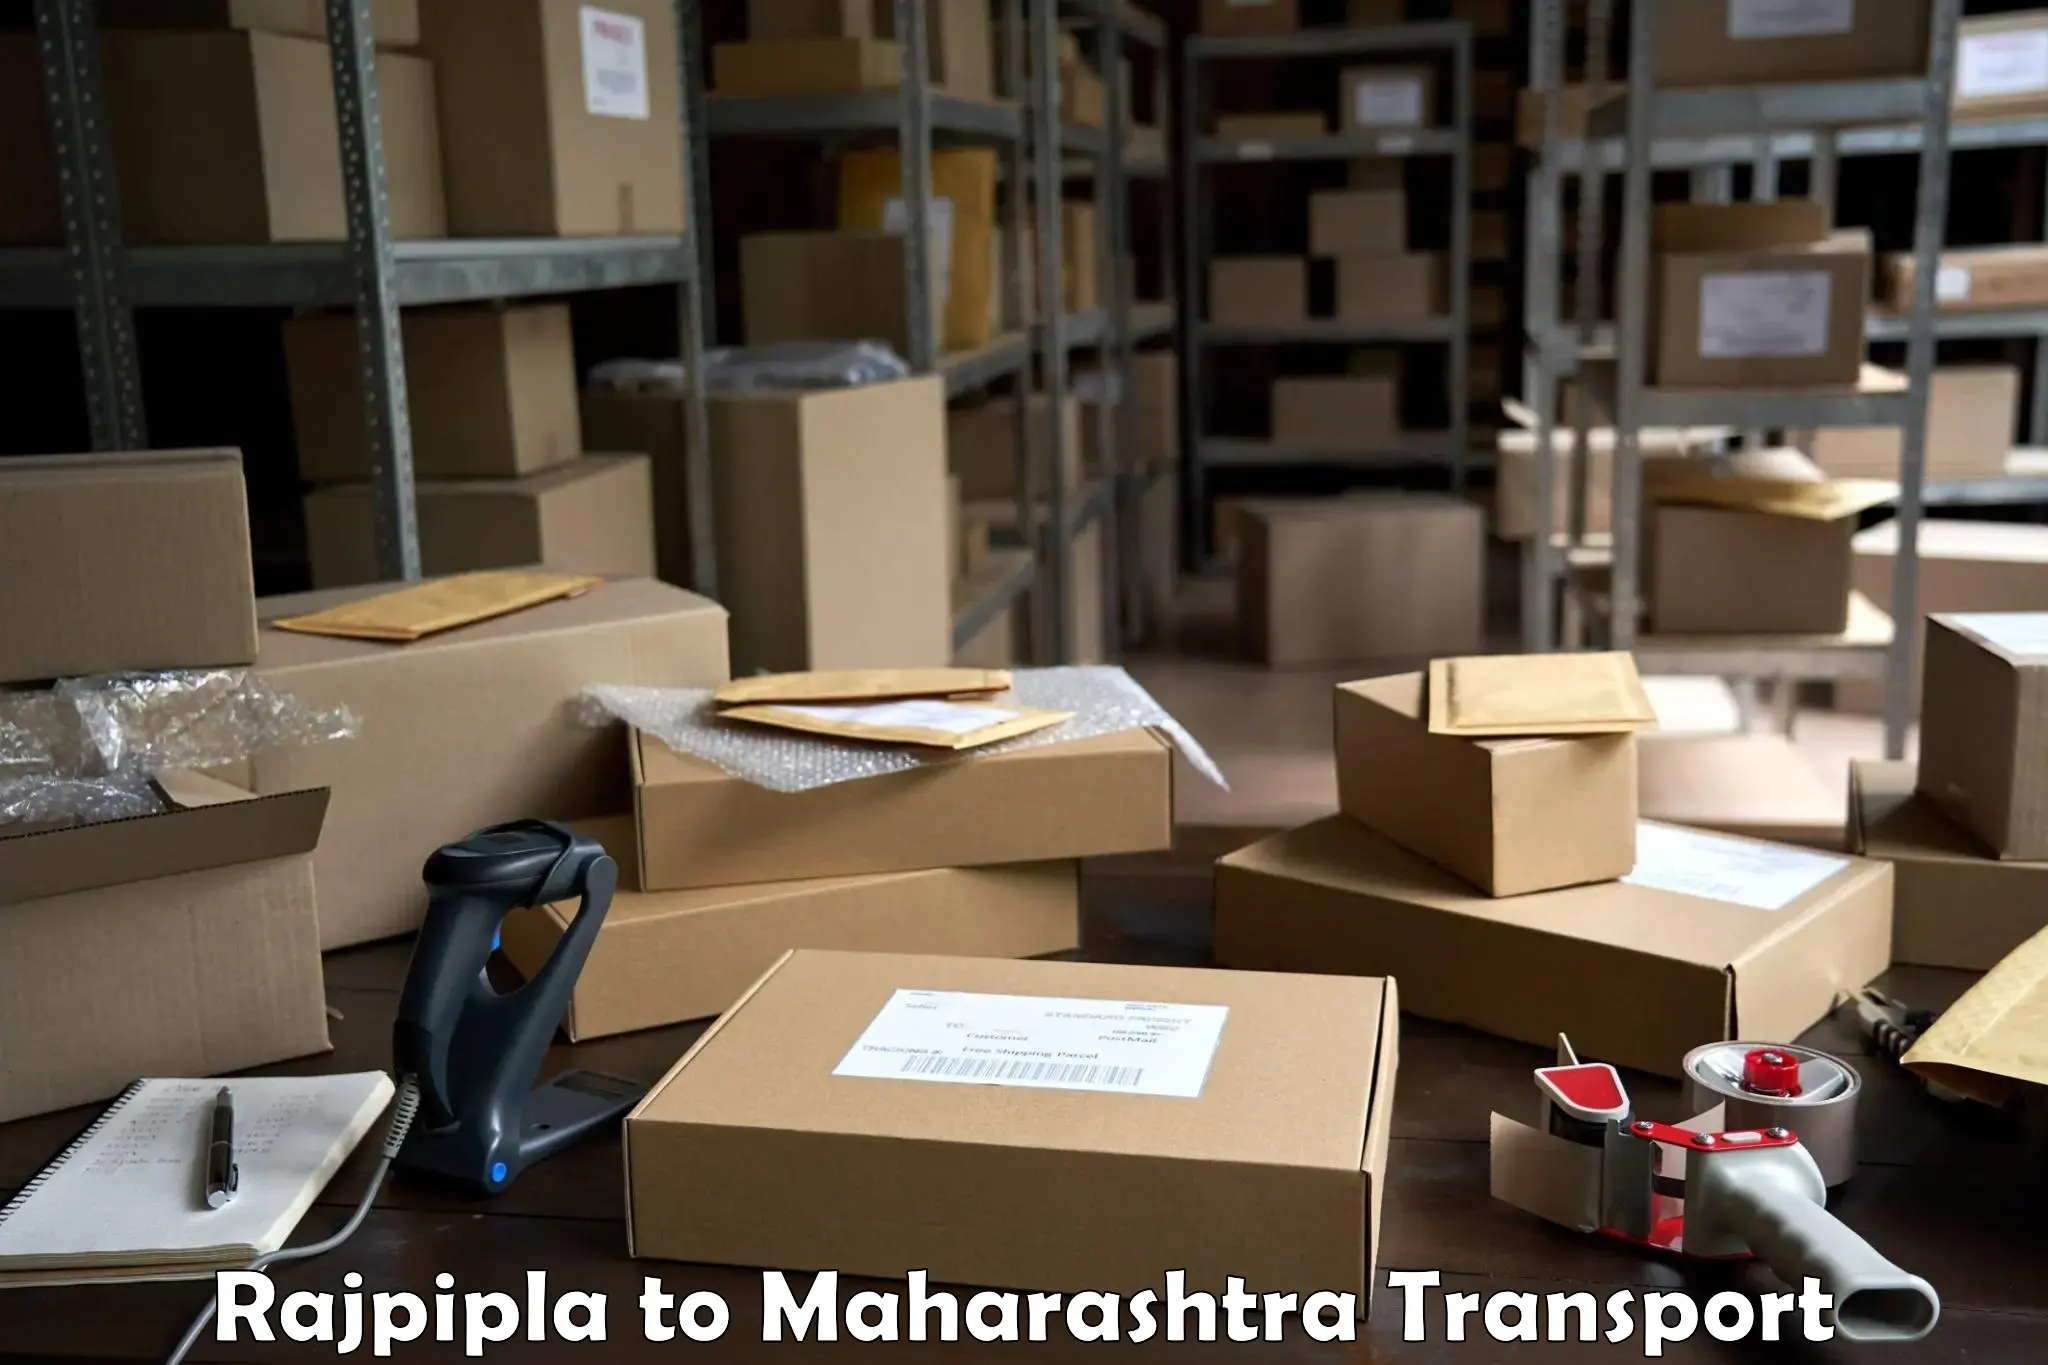 Delivery service Rajpipla to Maharashtra